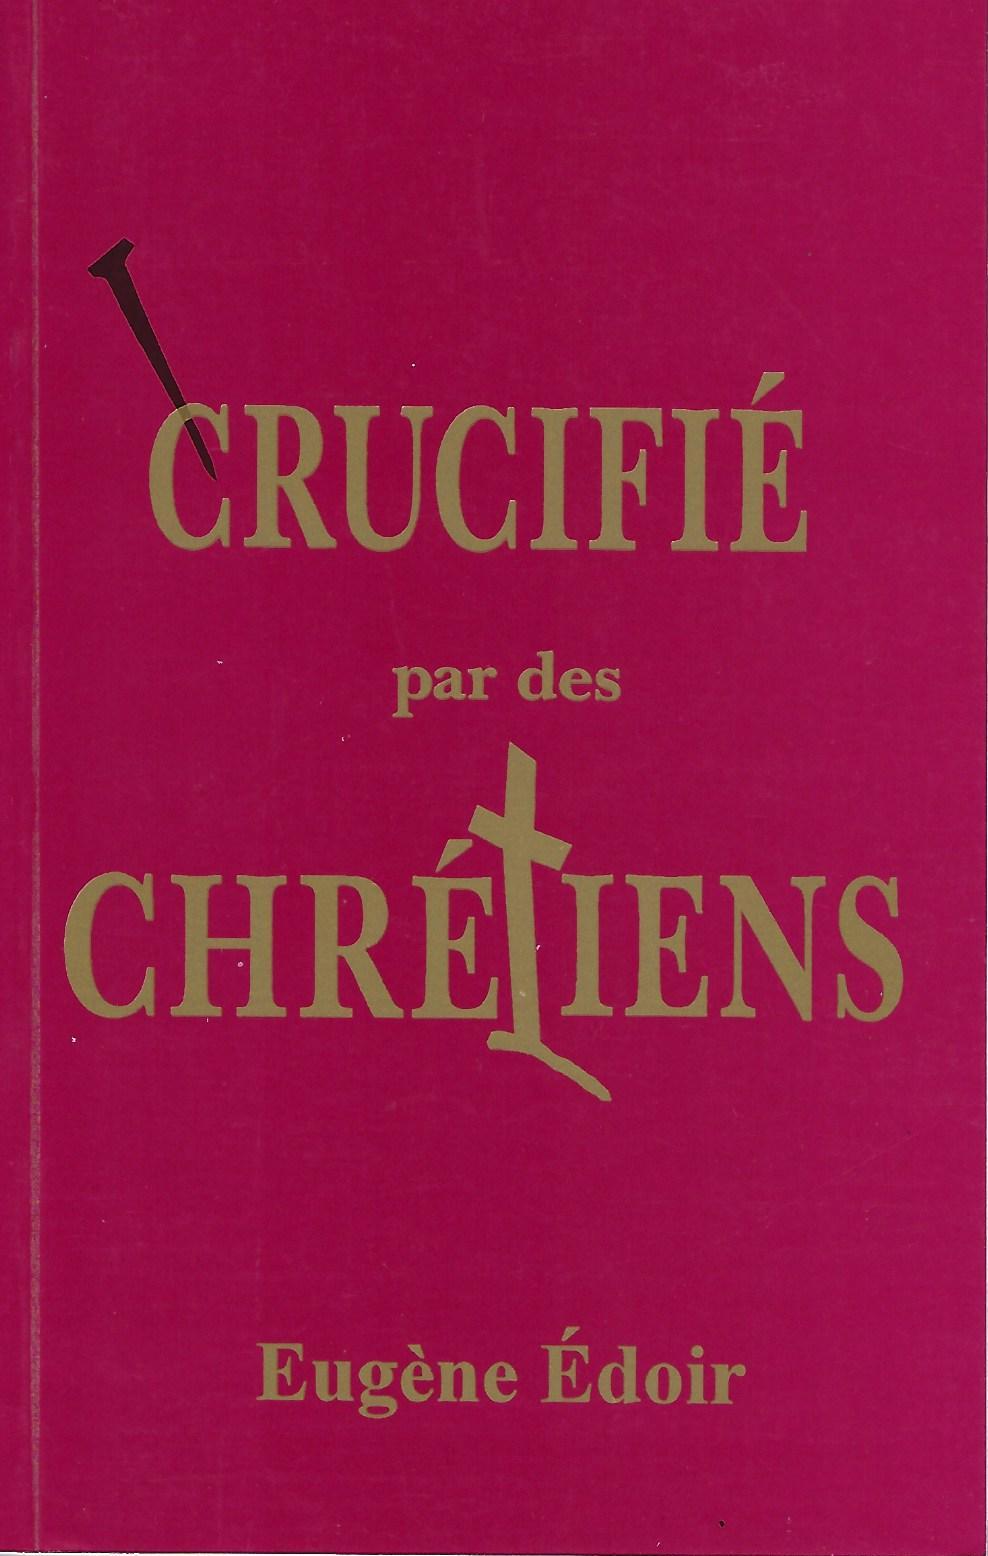 Crucifié par des chrétiens